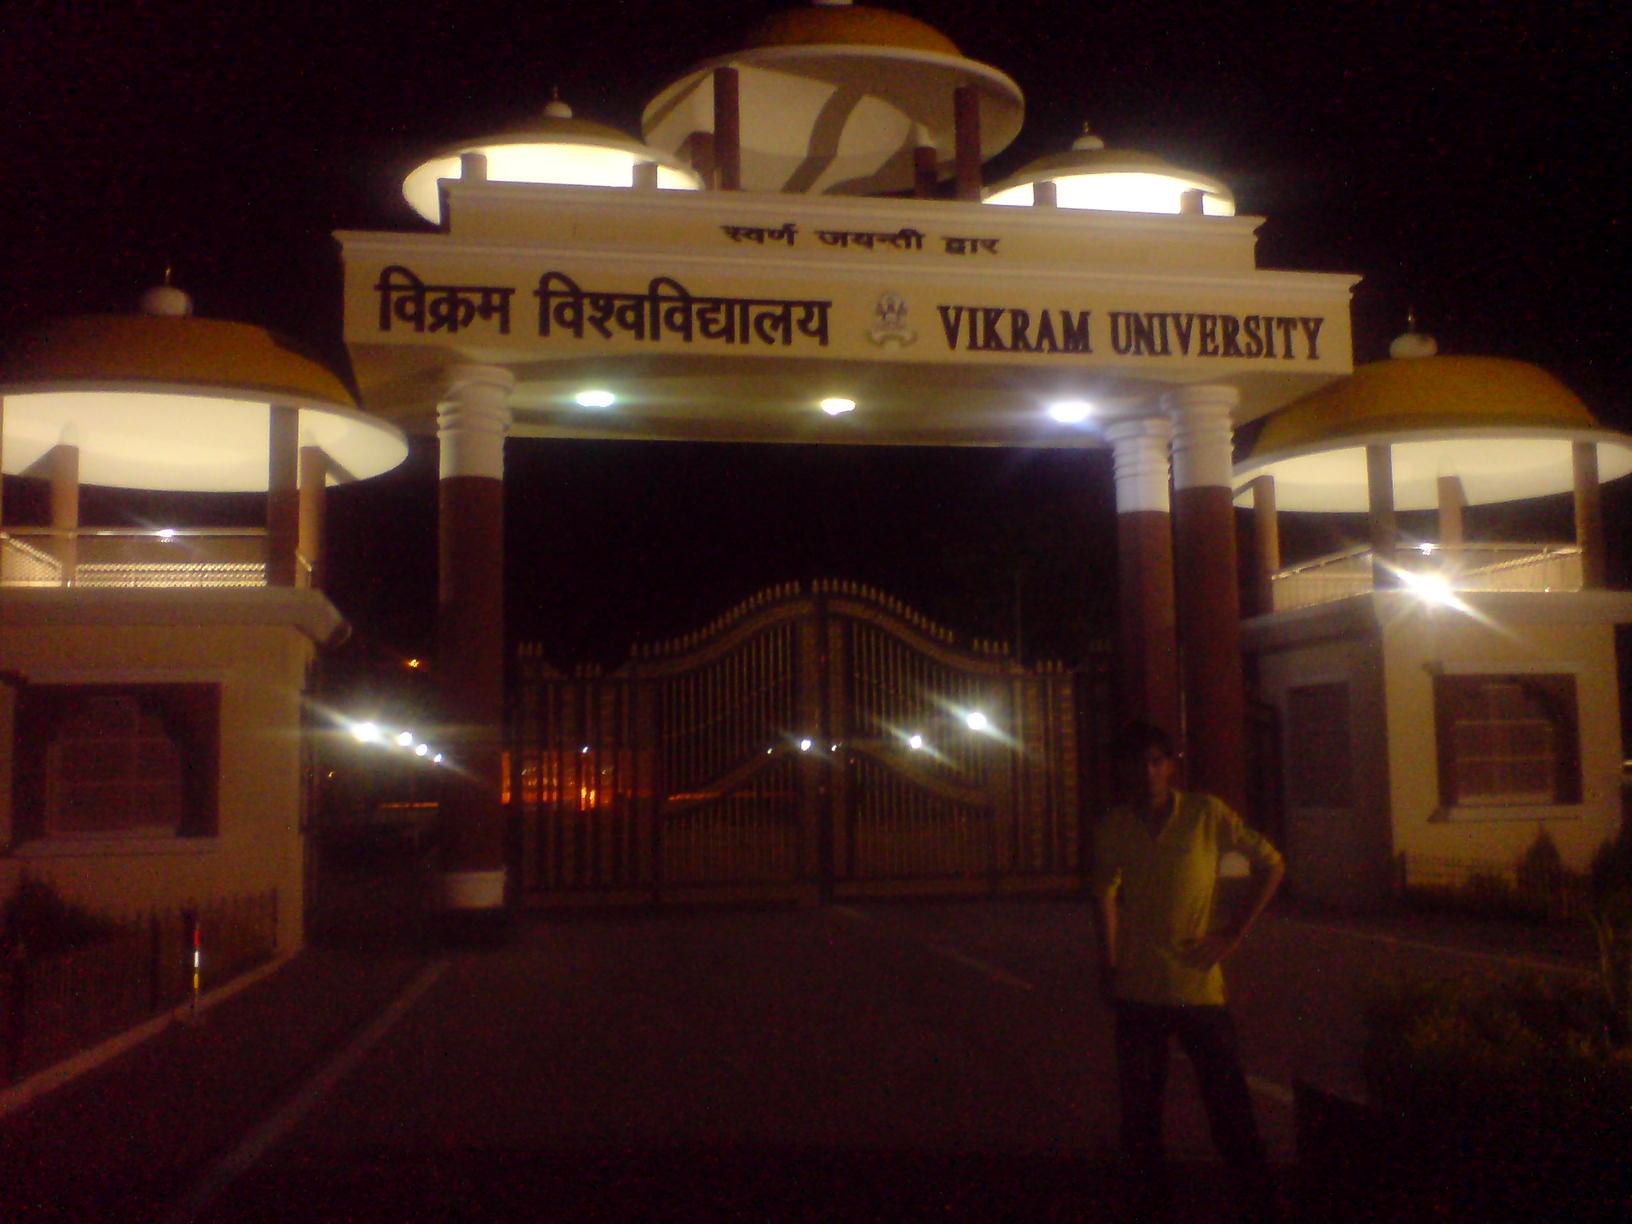 Vikram university